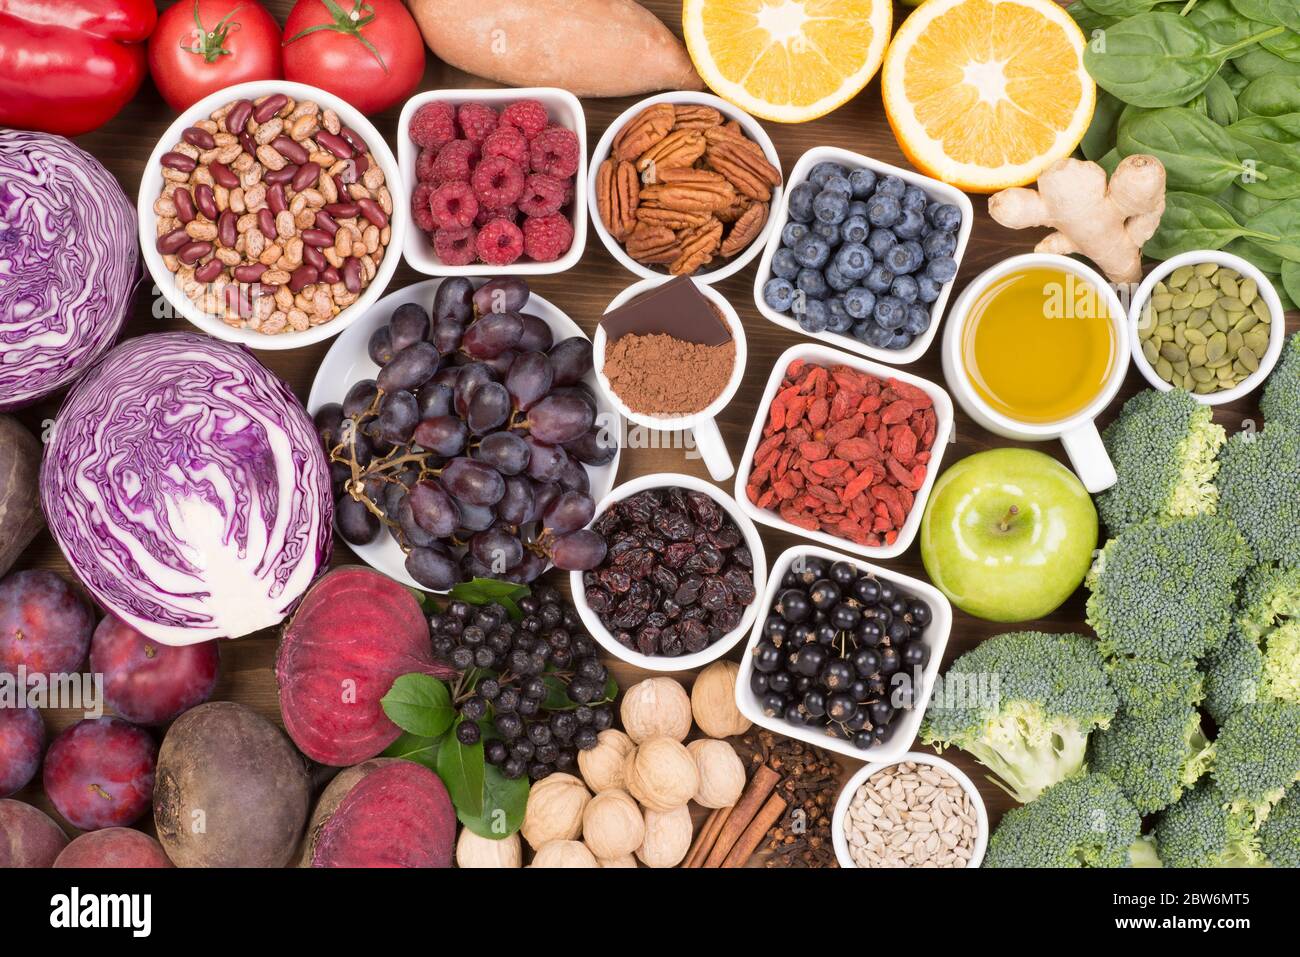 Fonti alimentari di antiossidanti naturali come frutta, verdura, frutta a guscio e cacao in polvere. Gli antiossidanti neutralizzano i radicali liberi Foto Stock